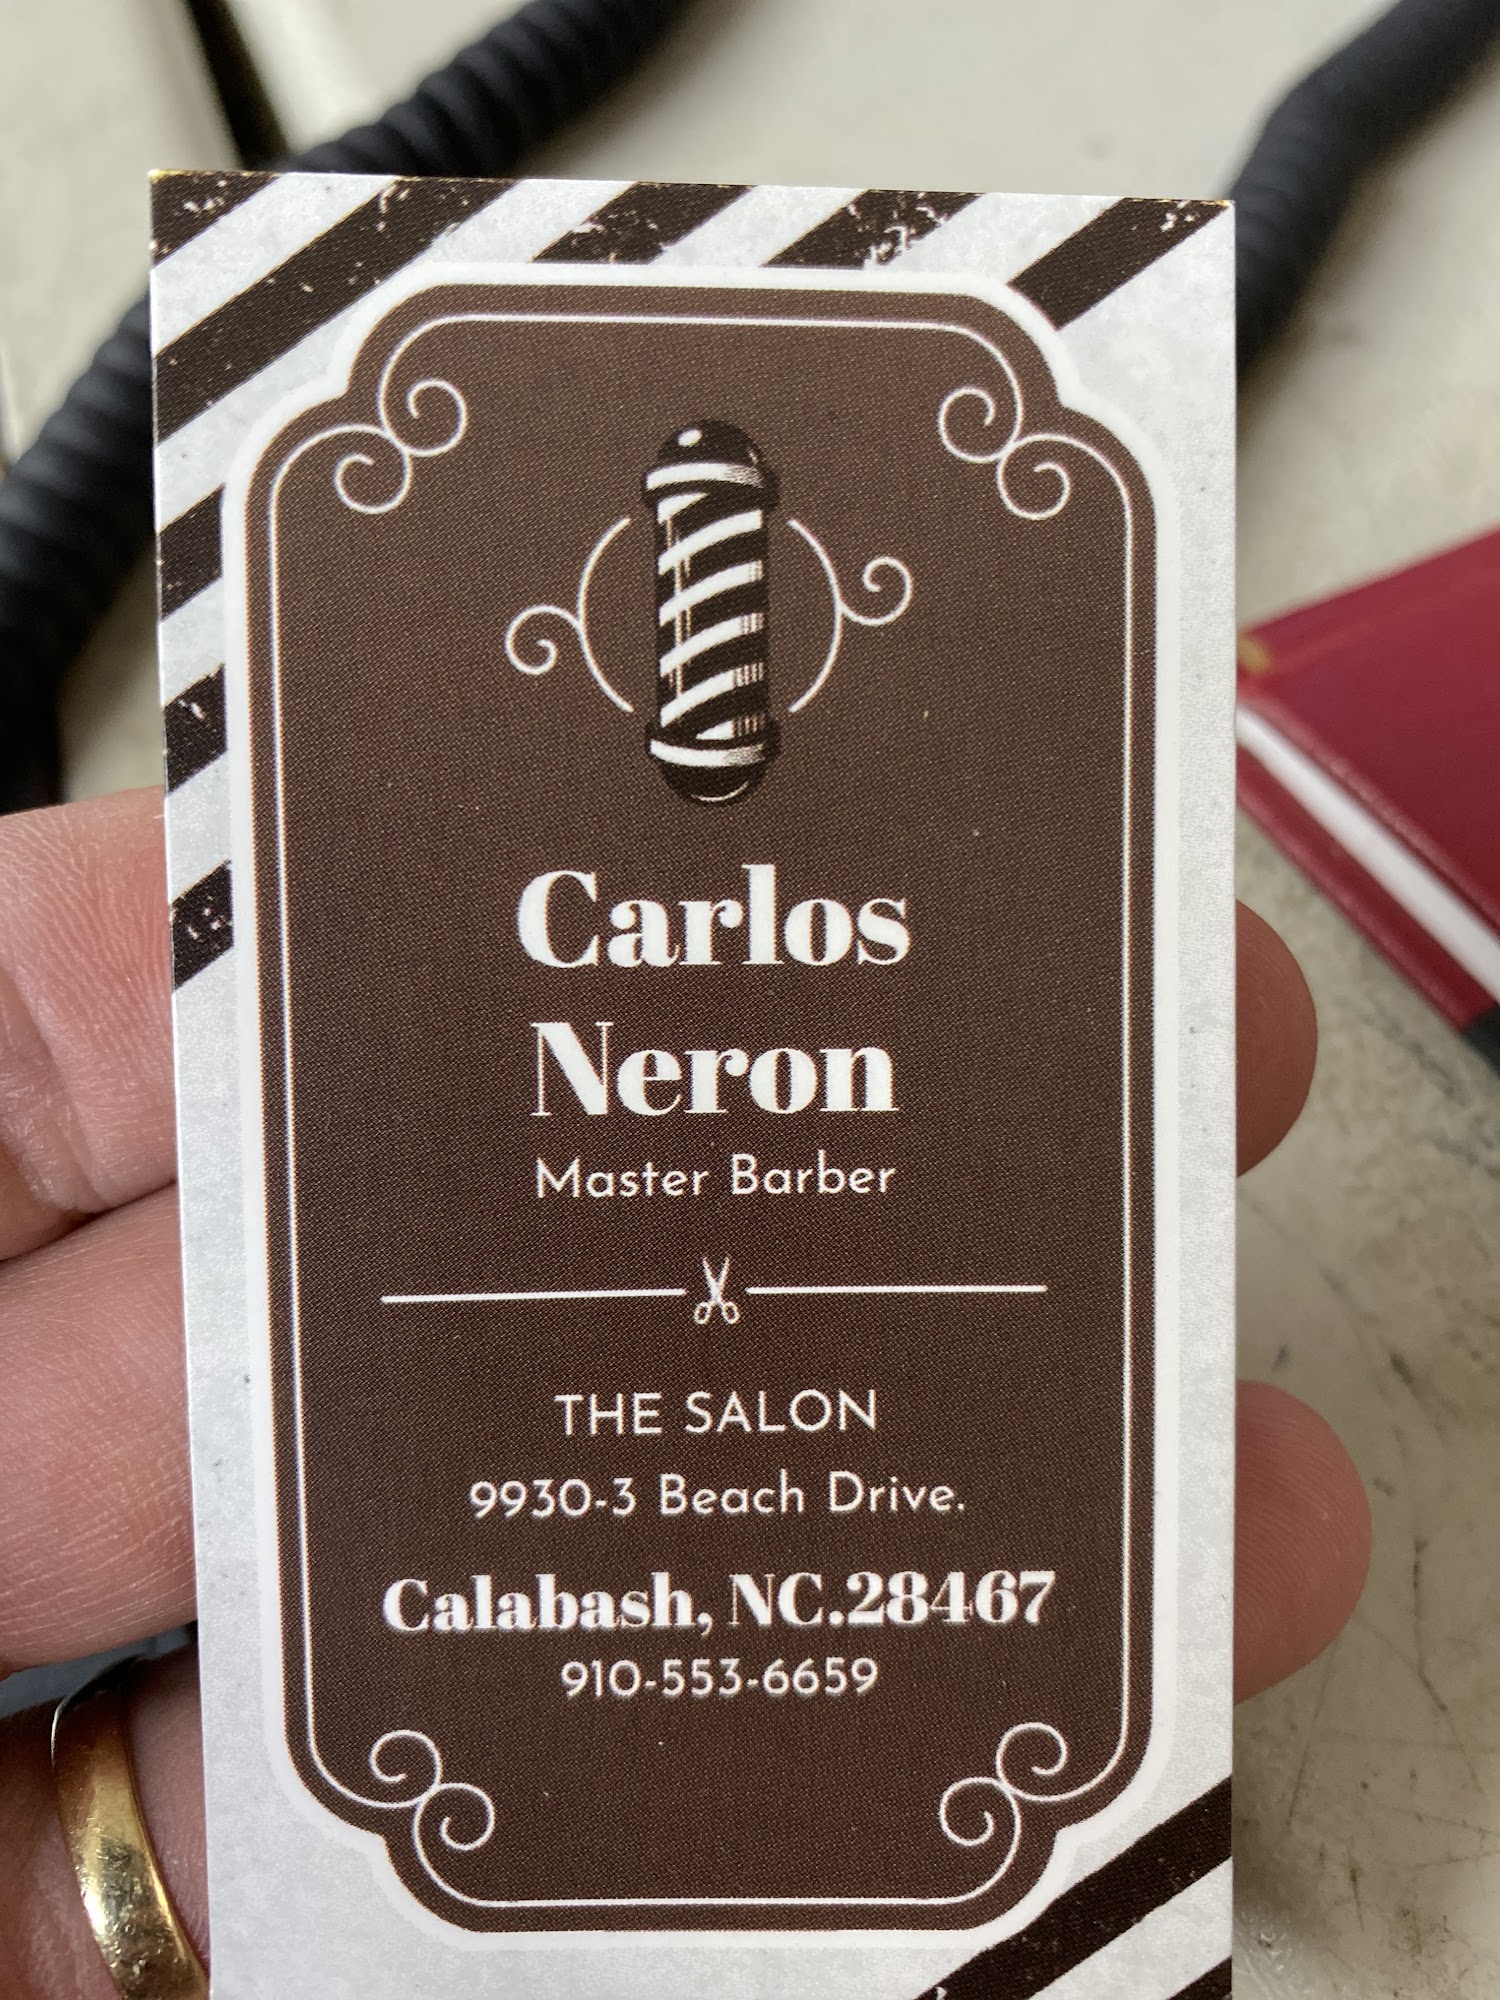 The Salon 9930-3 Beach Dr SW, Calabash North Carolina 28467